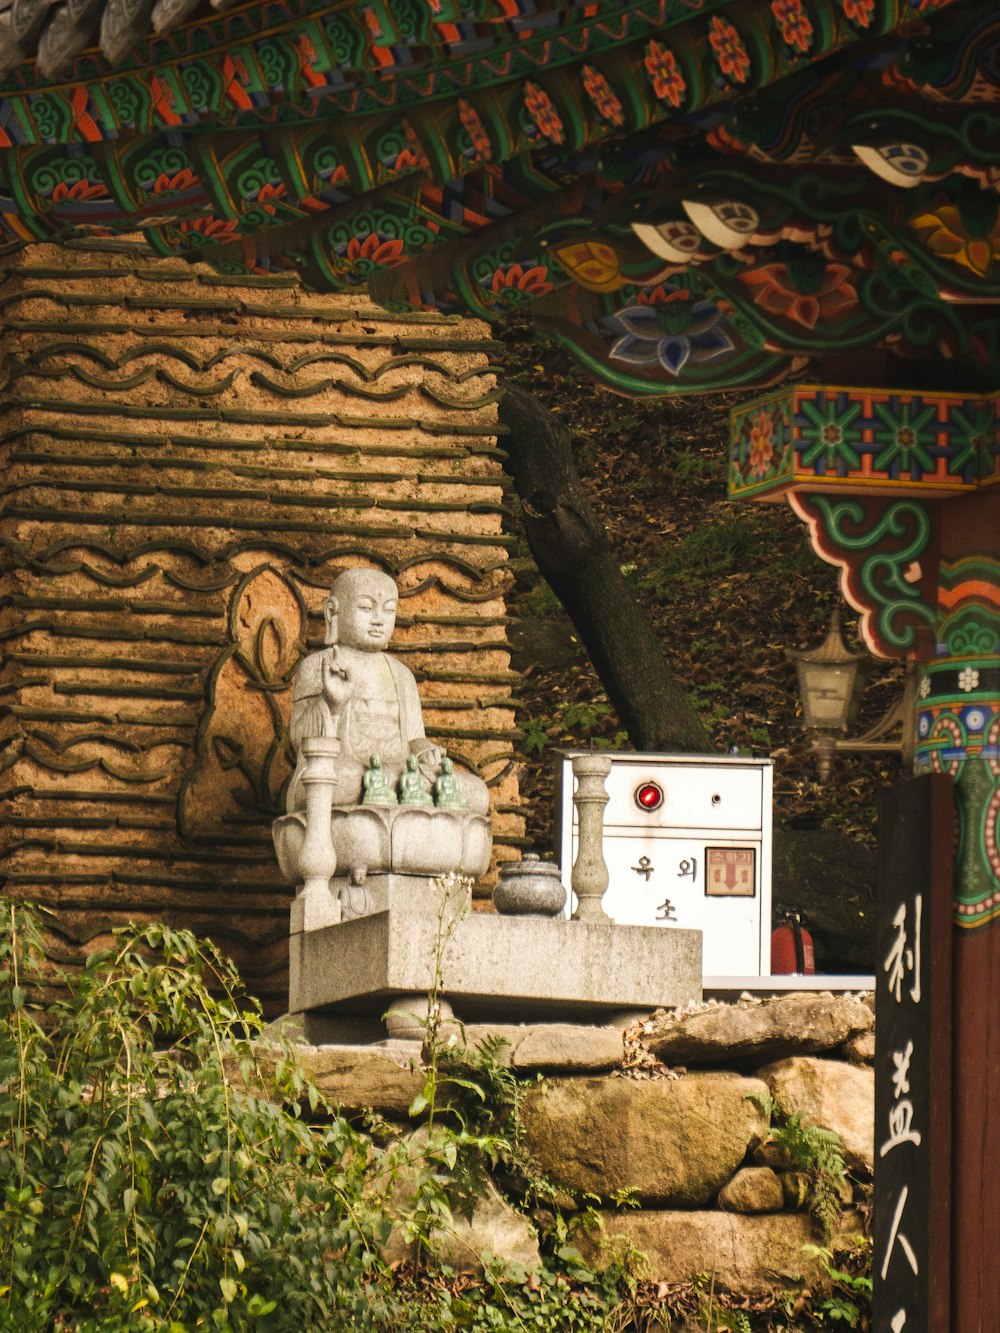 Una estatua de un Buda sentado encima de un banco de piedra